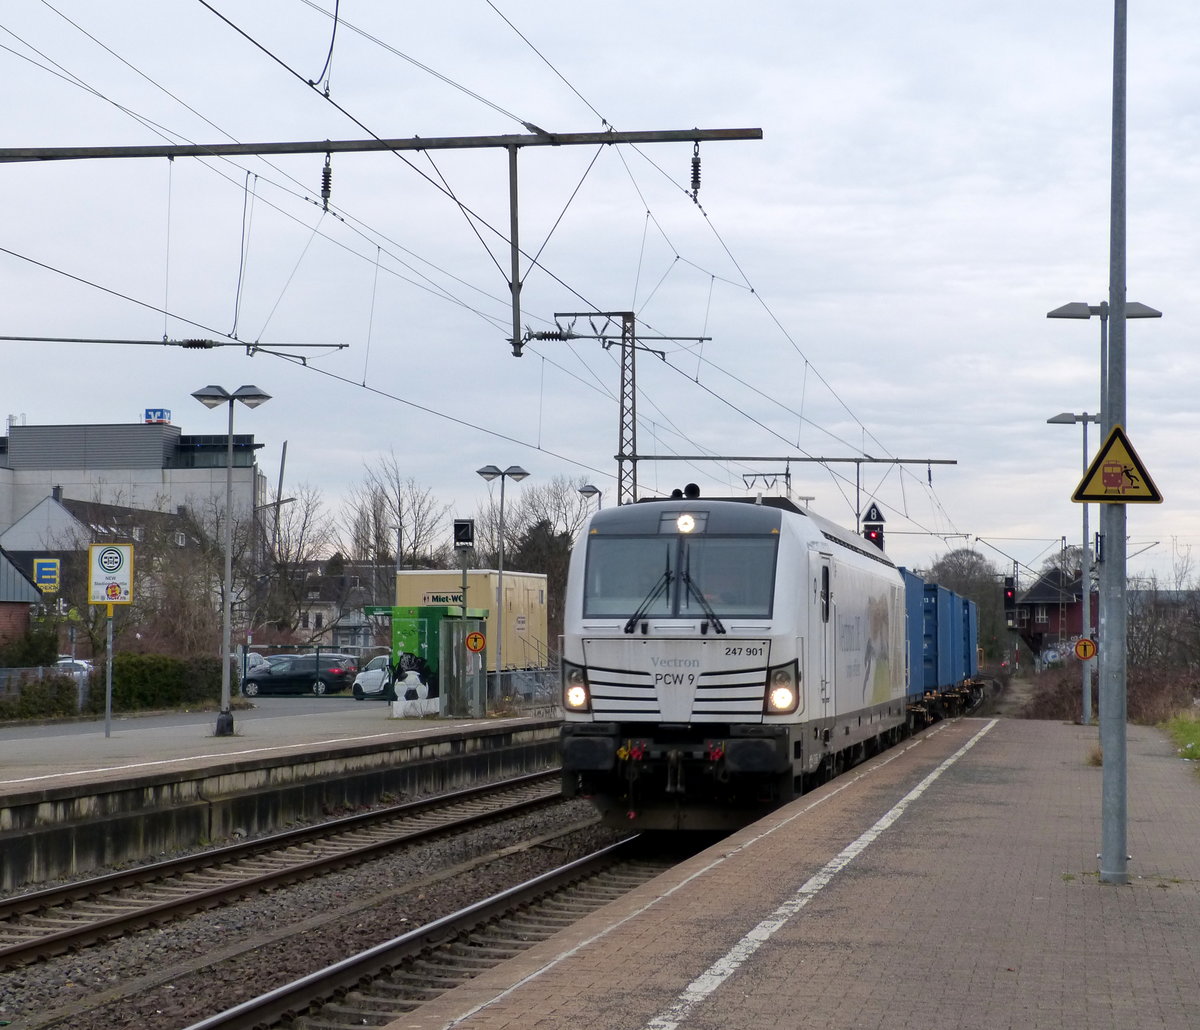 247 901 von Siemens kommt mit zwei Containerwargen aus Krefeld-Uerdingen(D) nach Wegberg-Wildenrath(D) und kommt aus Richtung Mönchengladbach-Hbf, und fährt durch Rheydt-Hbf in Richtung Wegberg-Wildenrath.
Aufgenommen vom Bahnsteig 3 in Rheydt-Hbf. 
Bei Sonne und Regenwolken am Nachmittag vom 15.3.2018.